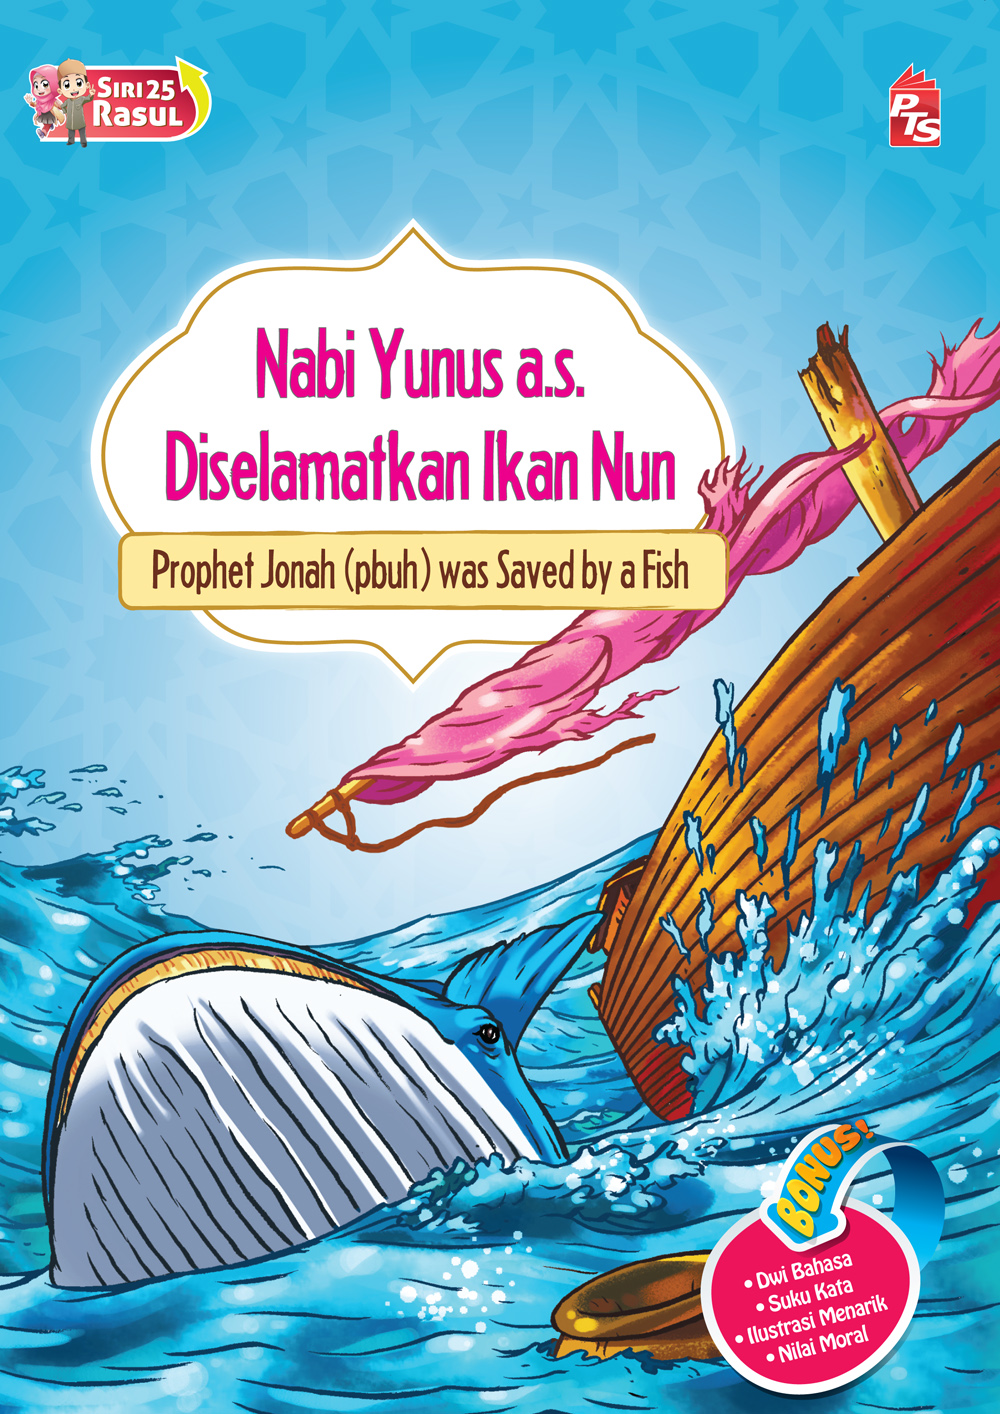 Siri 25 Rasul - Nabi Yunus a.s. Diselamatkan Ikan Nun 